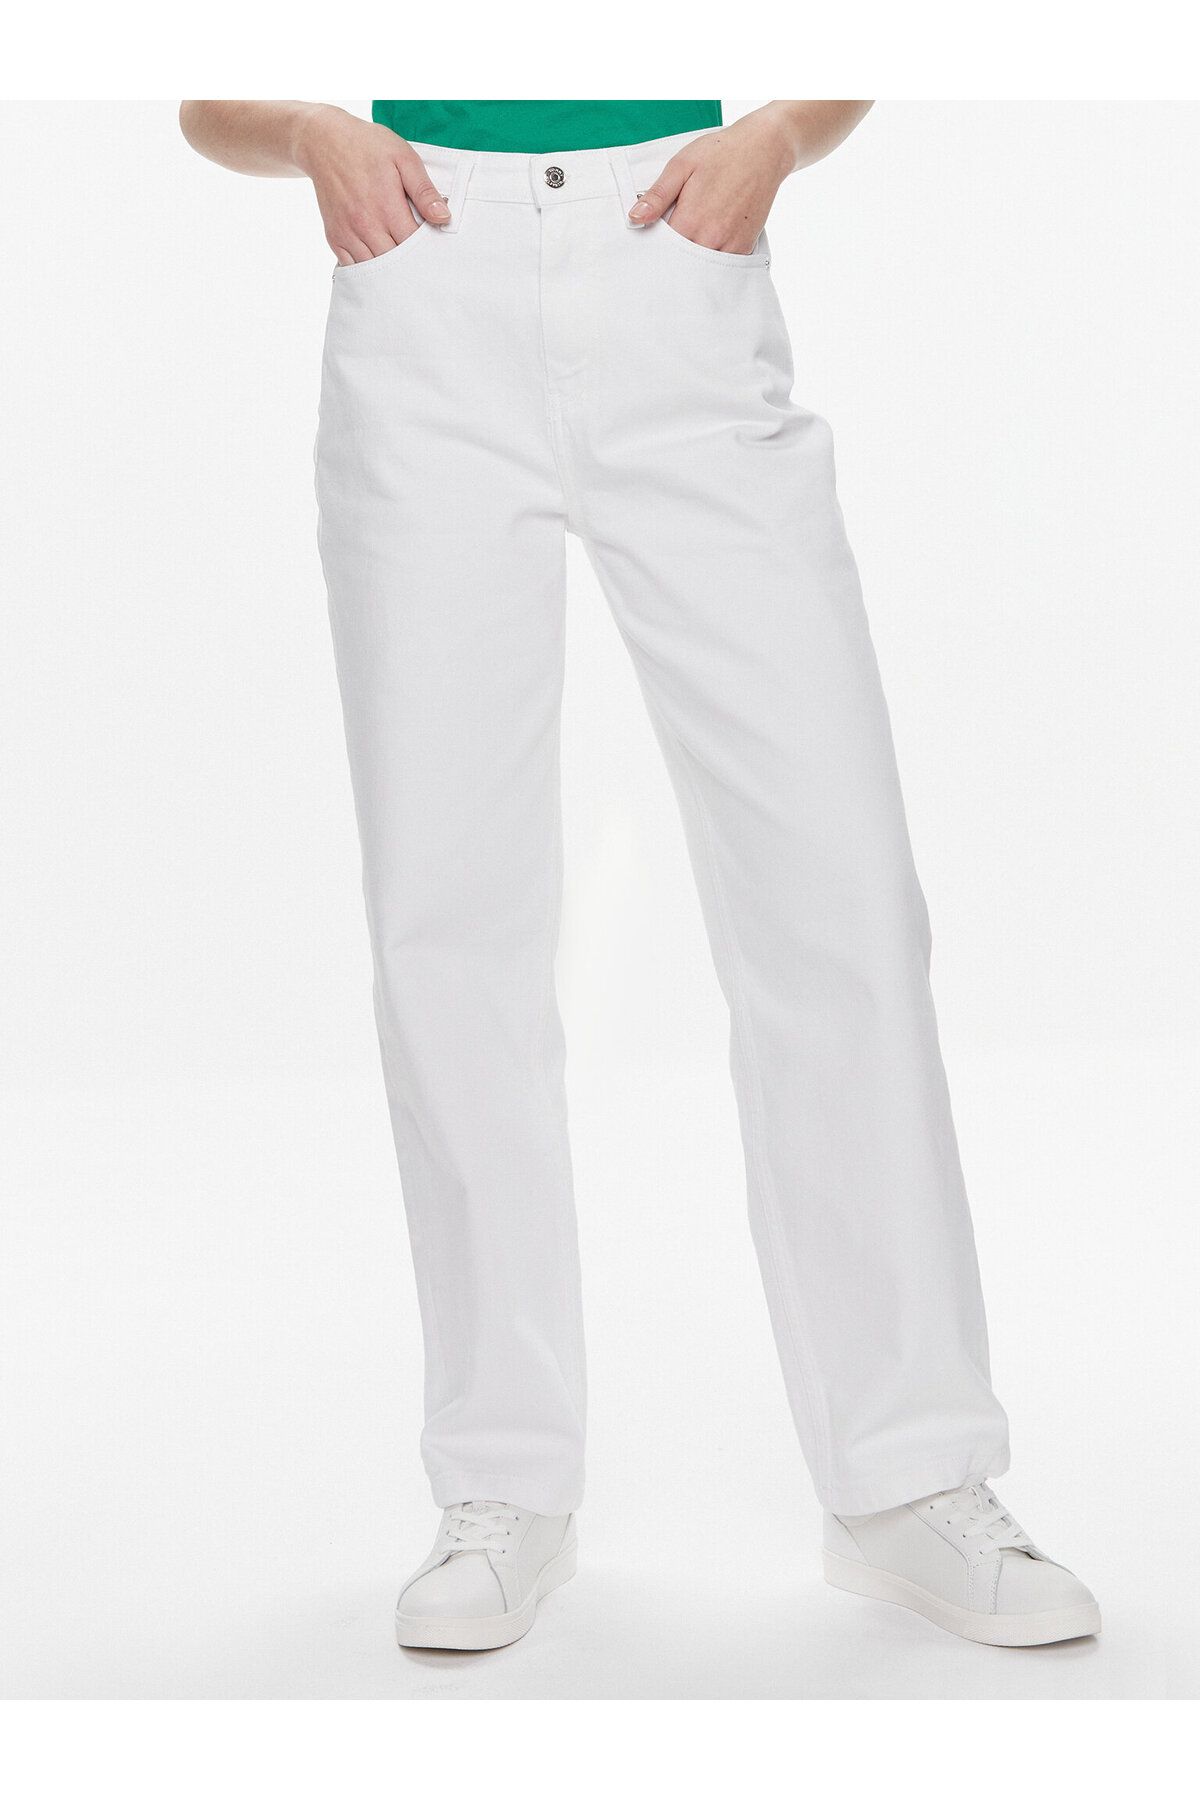 Tommy Hilfiger Kadın Denim Cepli Normal Kalıp Günlük Kullanım Beyaz Jeans WW0WW41319-YCF